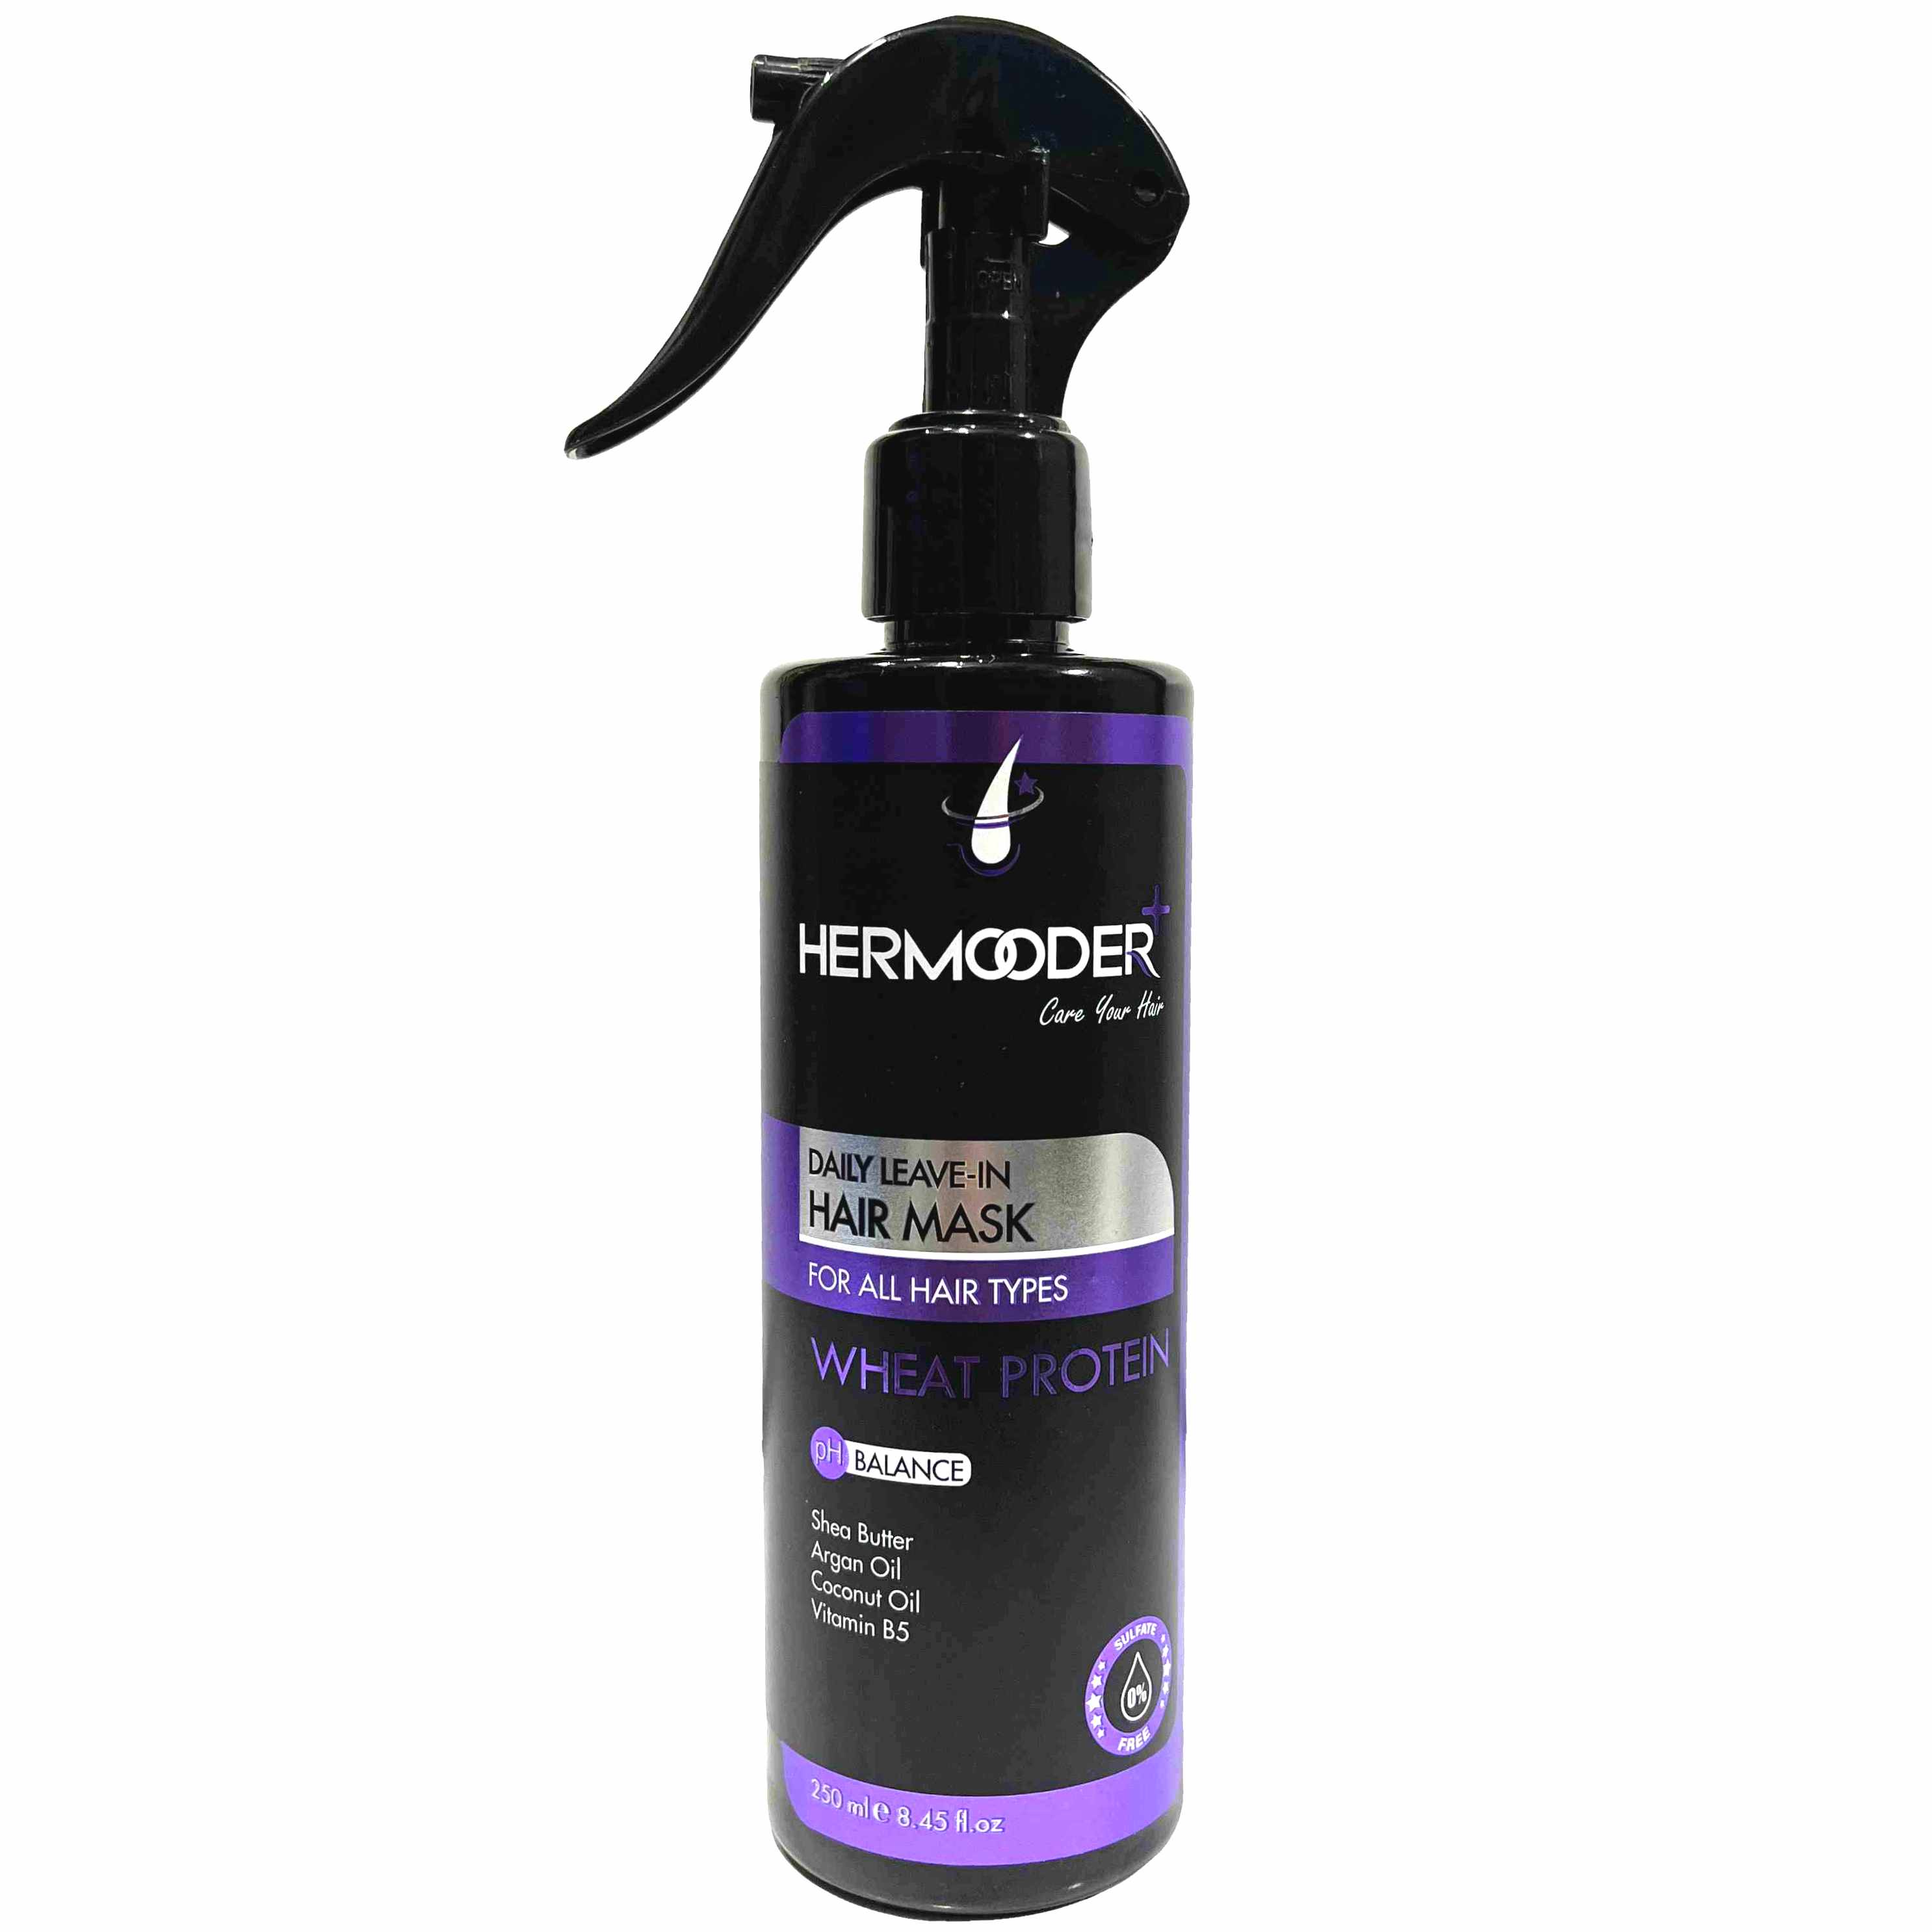 ماسک مو روزانه بدون نیاز به آبکشی نرم کننده انواع مو هرمودر Hermooder